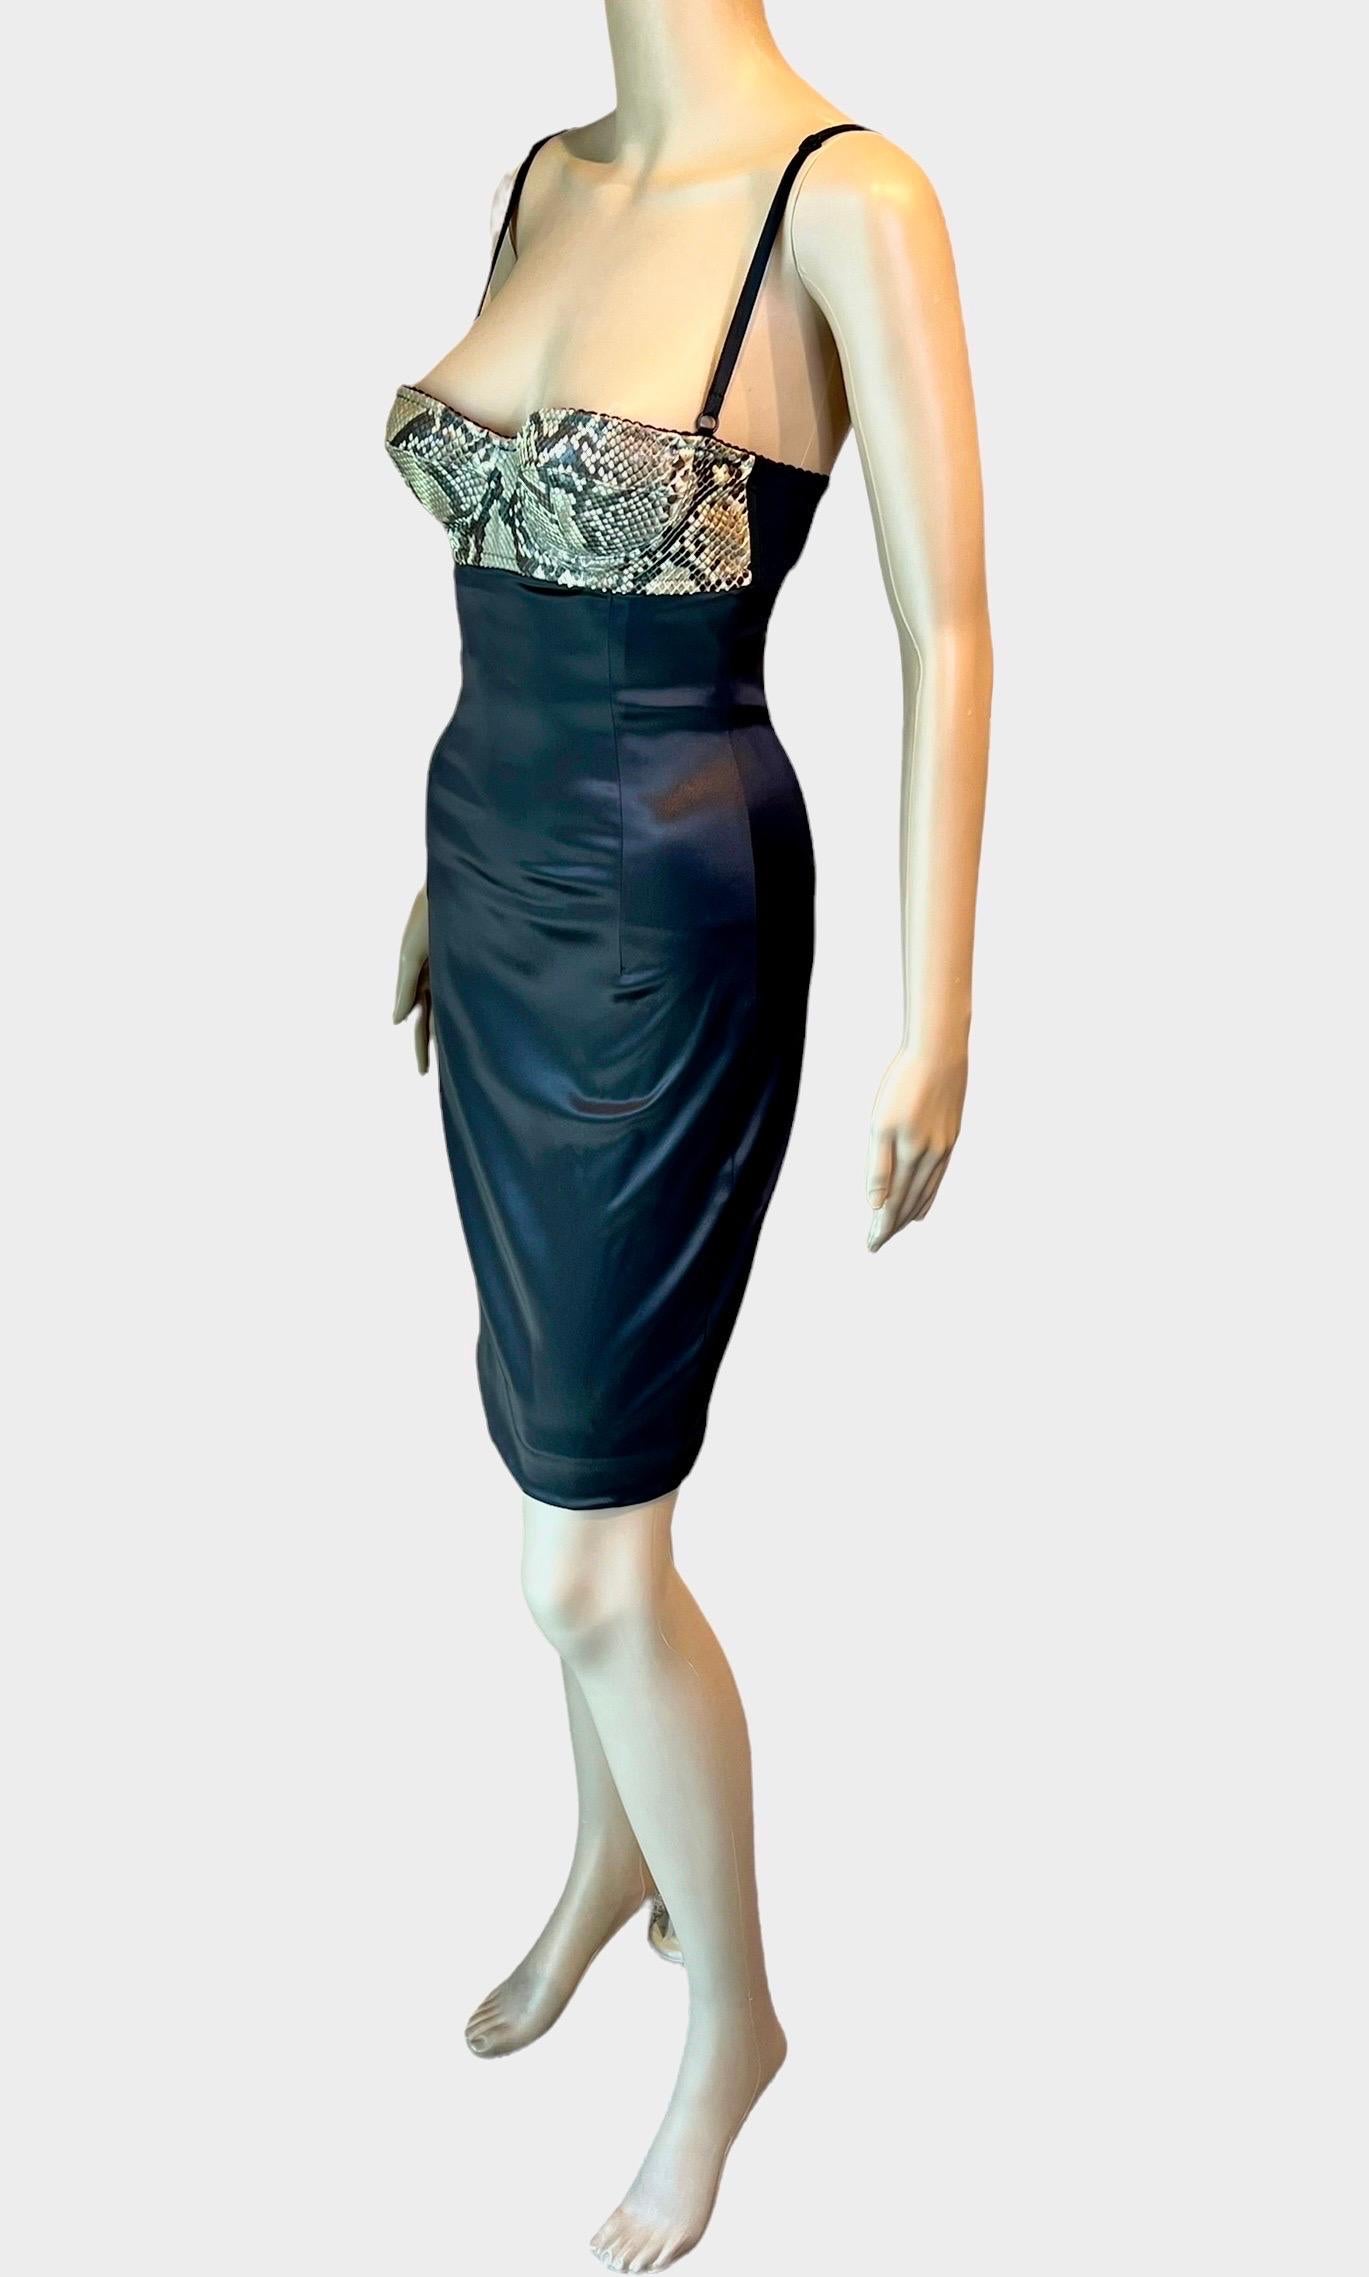 Dolce & Gabbana S/S 2005 Python Leather Bustier Bra Bodycon Silk Mini Dress 5